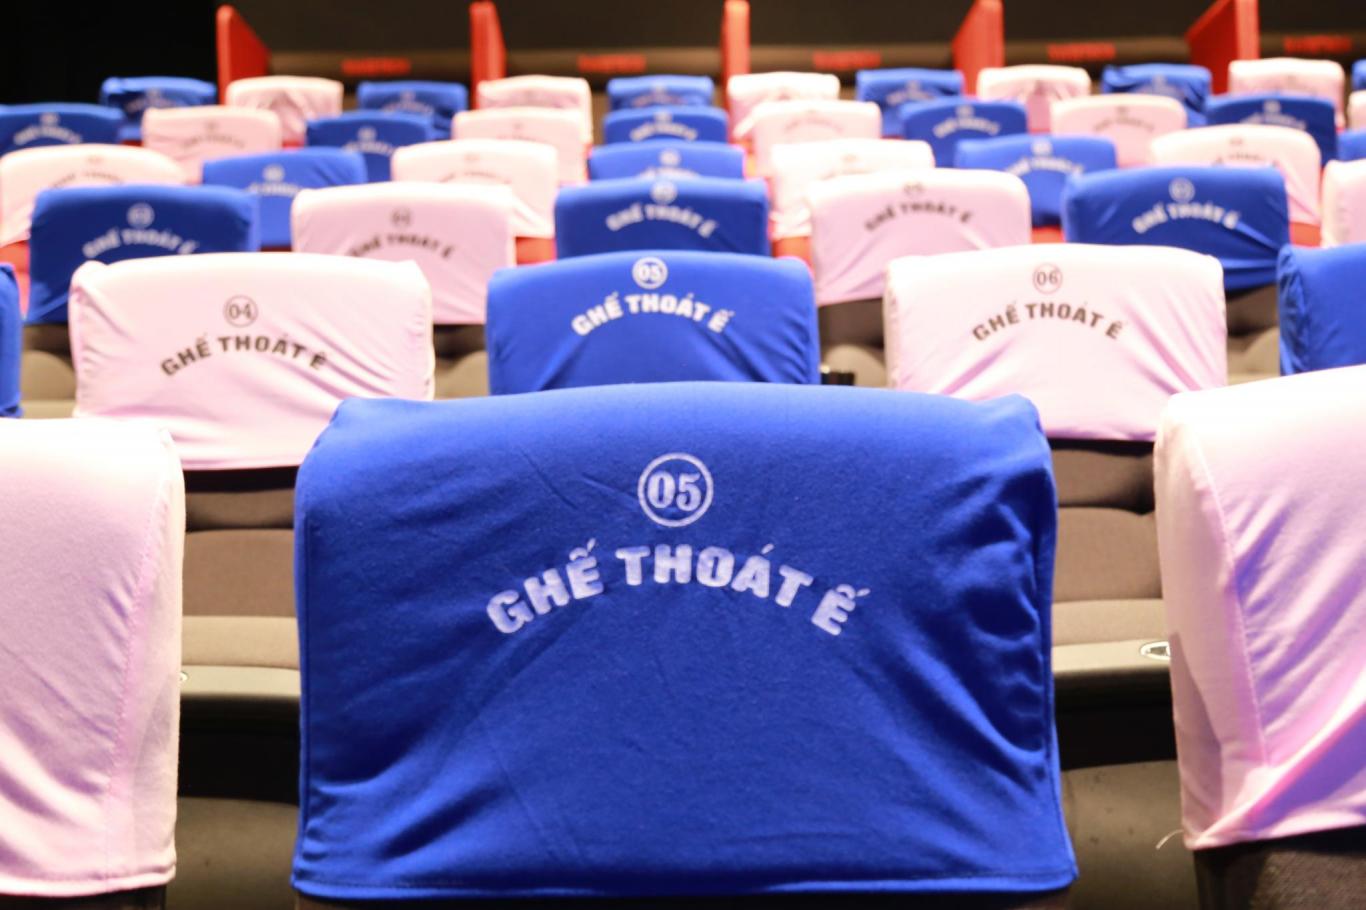 03. Bọc ghế màu xanh và màu hồng xinh xắn tại Single Cinema của CGV Giới trẻ tò mò trải nghiệm phòng chiếu thoát ế tại CGV